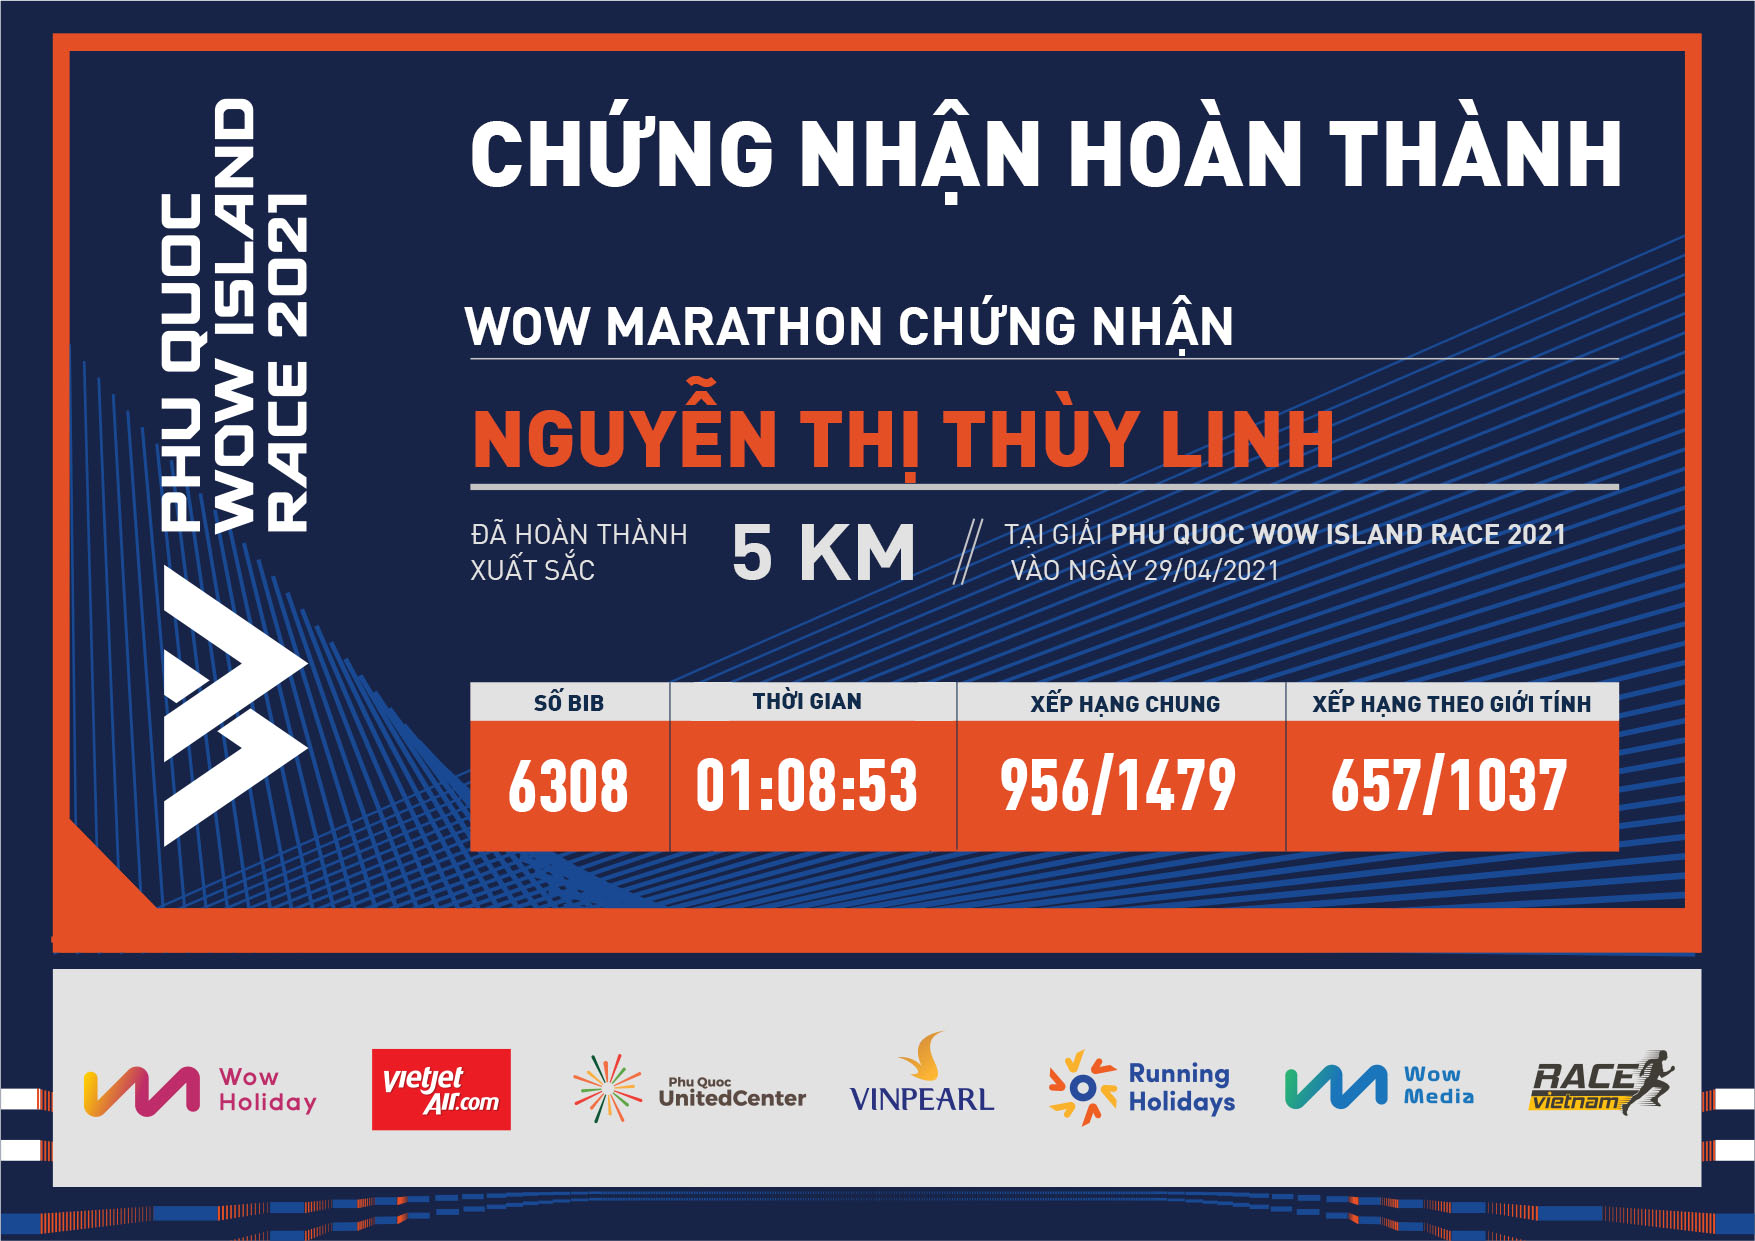 6308 - Nguyễn Thị Thùy Linh